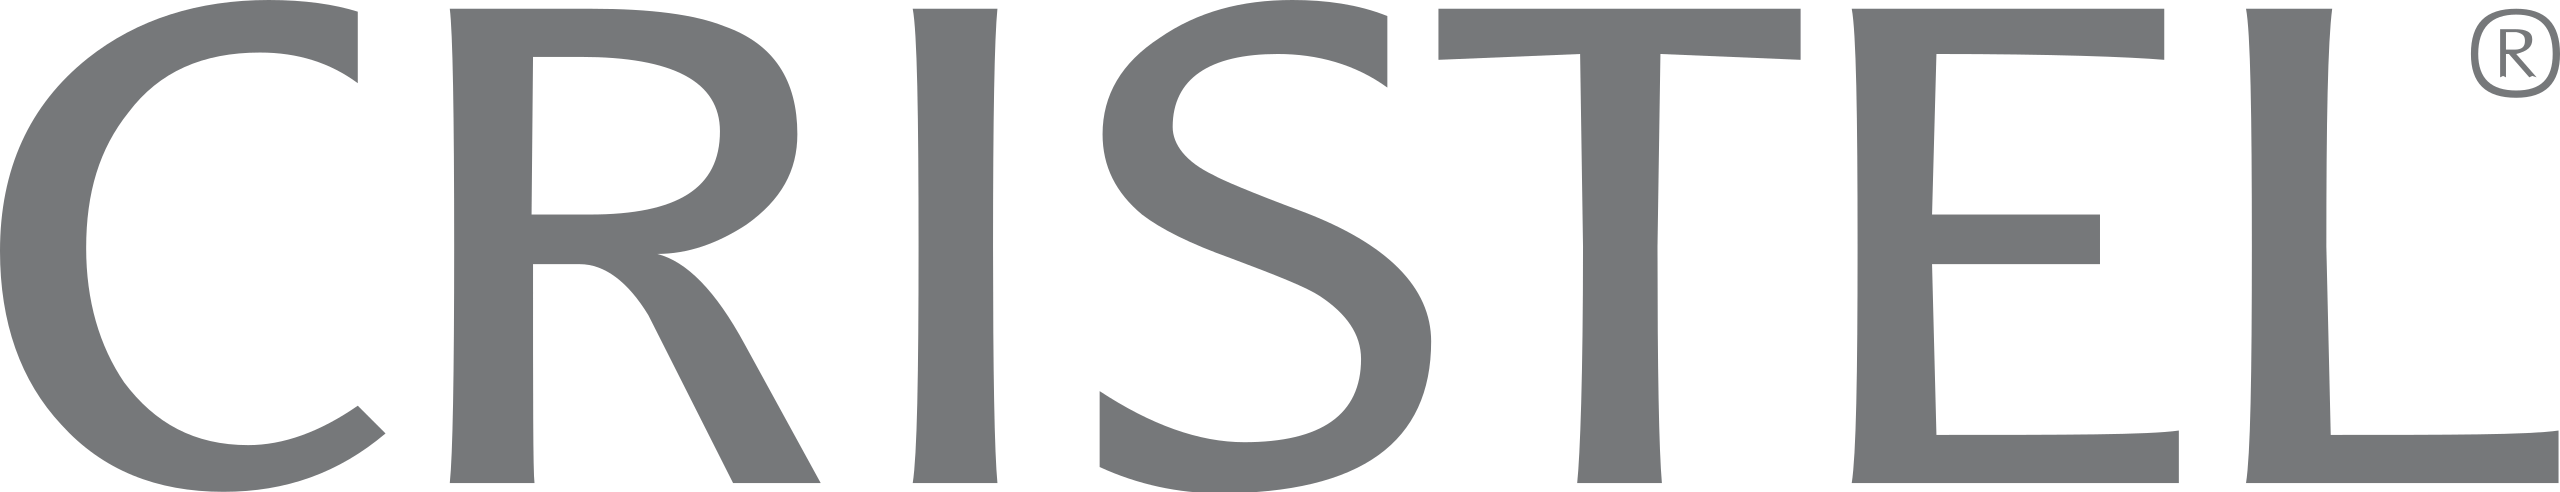 2560px-Cristel_logo.svg